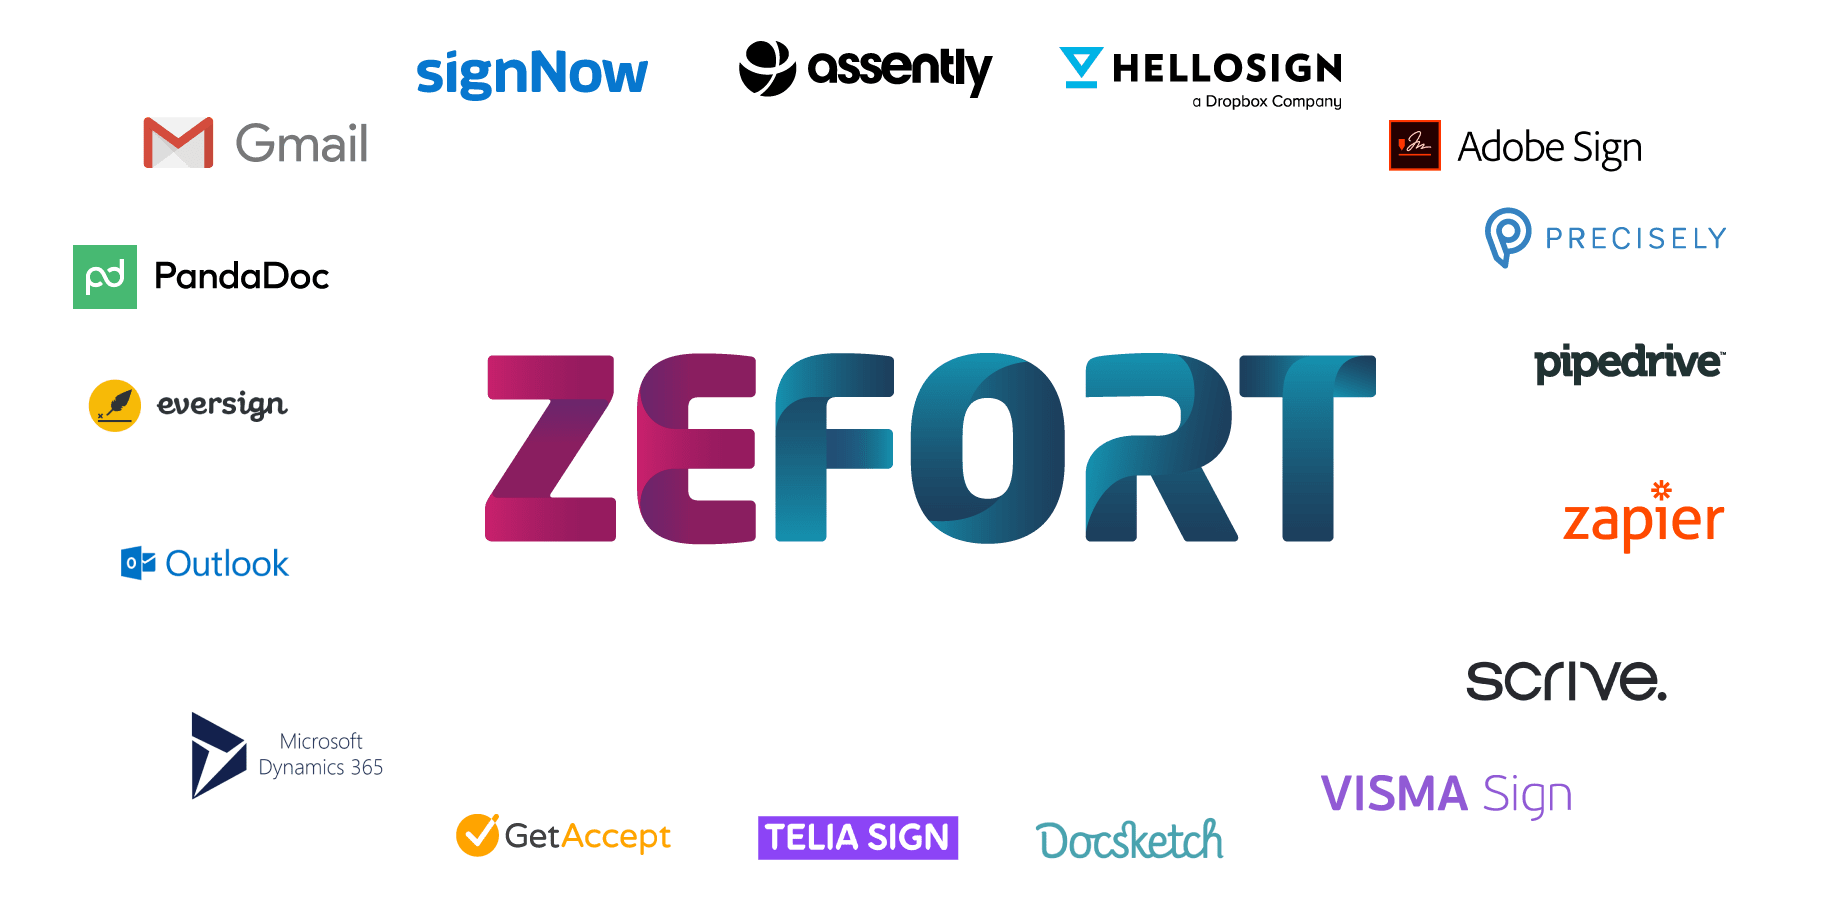 Zefort integrations